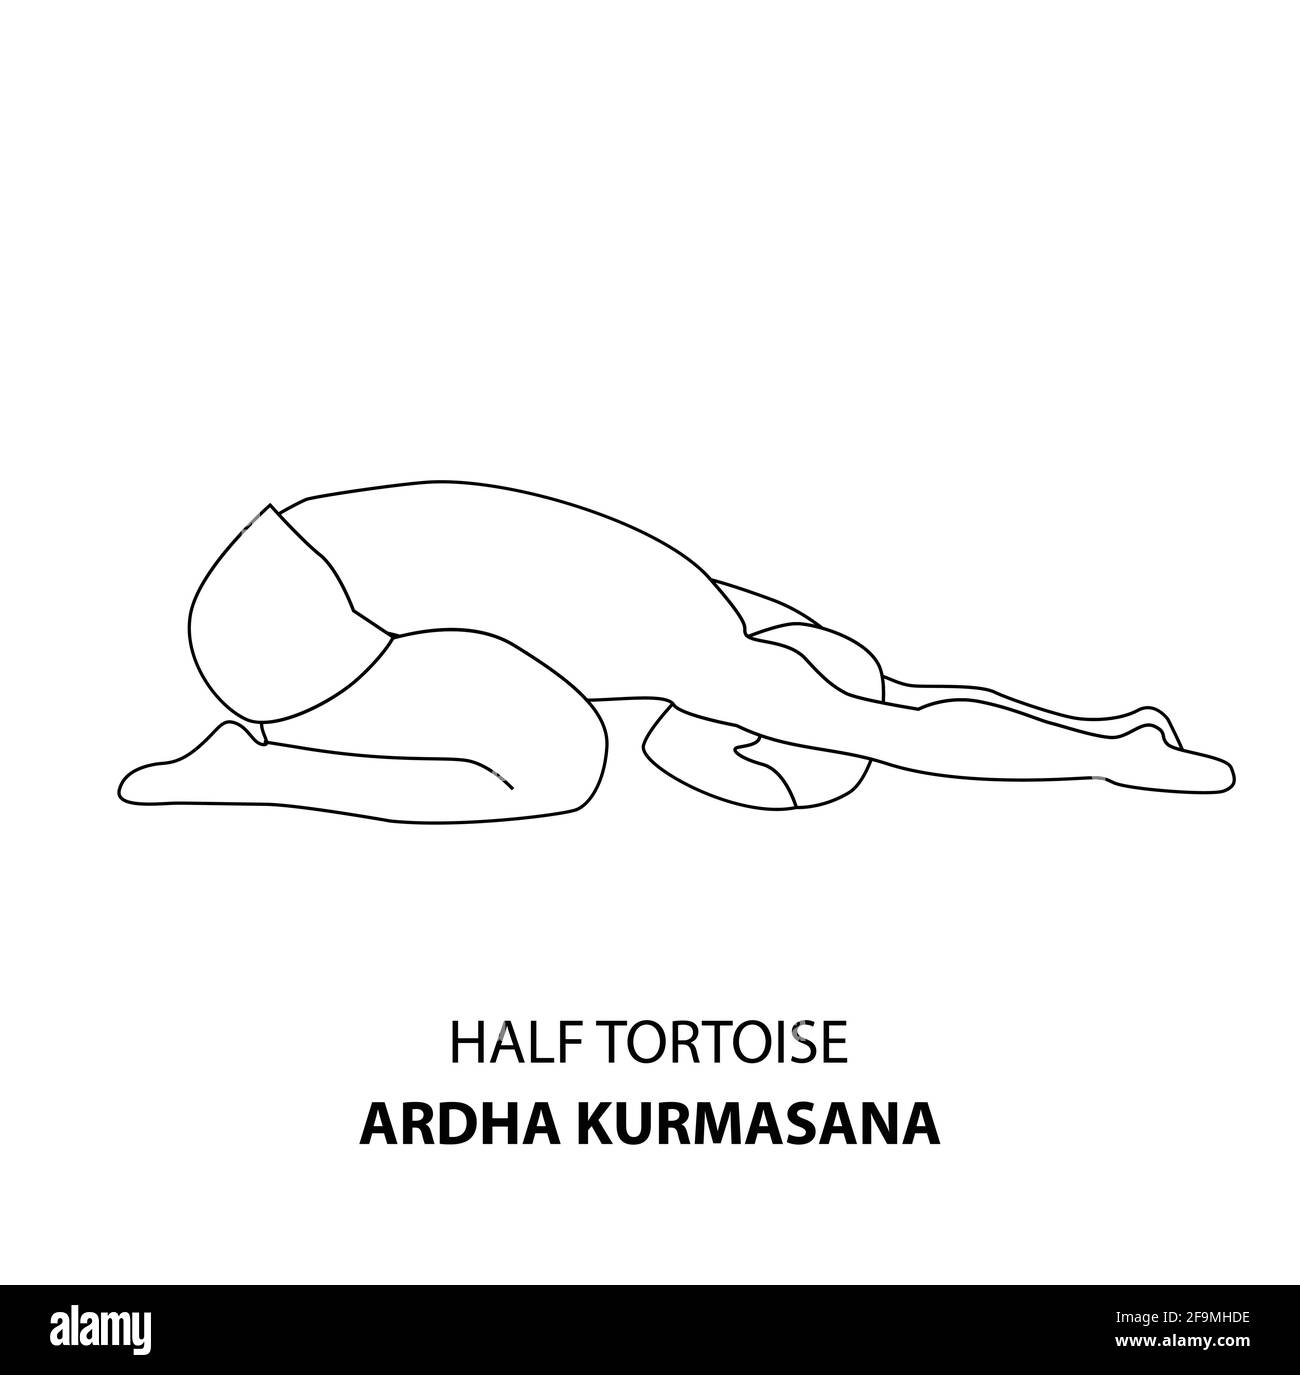 Homme pratiquant le yoga pose isolé contour Illustration. Homme debout dans la moitié de la tortue pose, ardha kurmasana, icône de la ligne de Yoga Asana Illustration de Vecteur